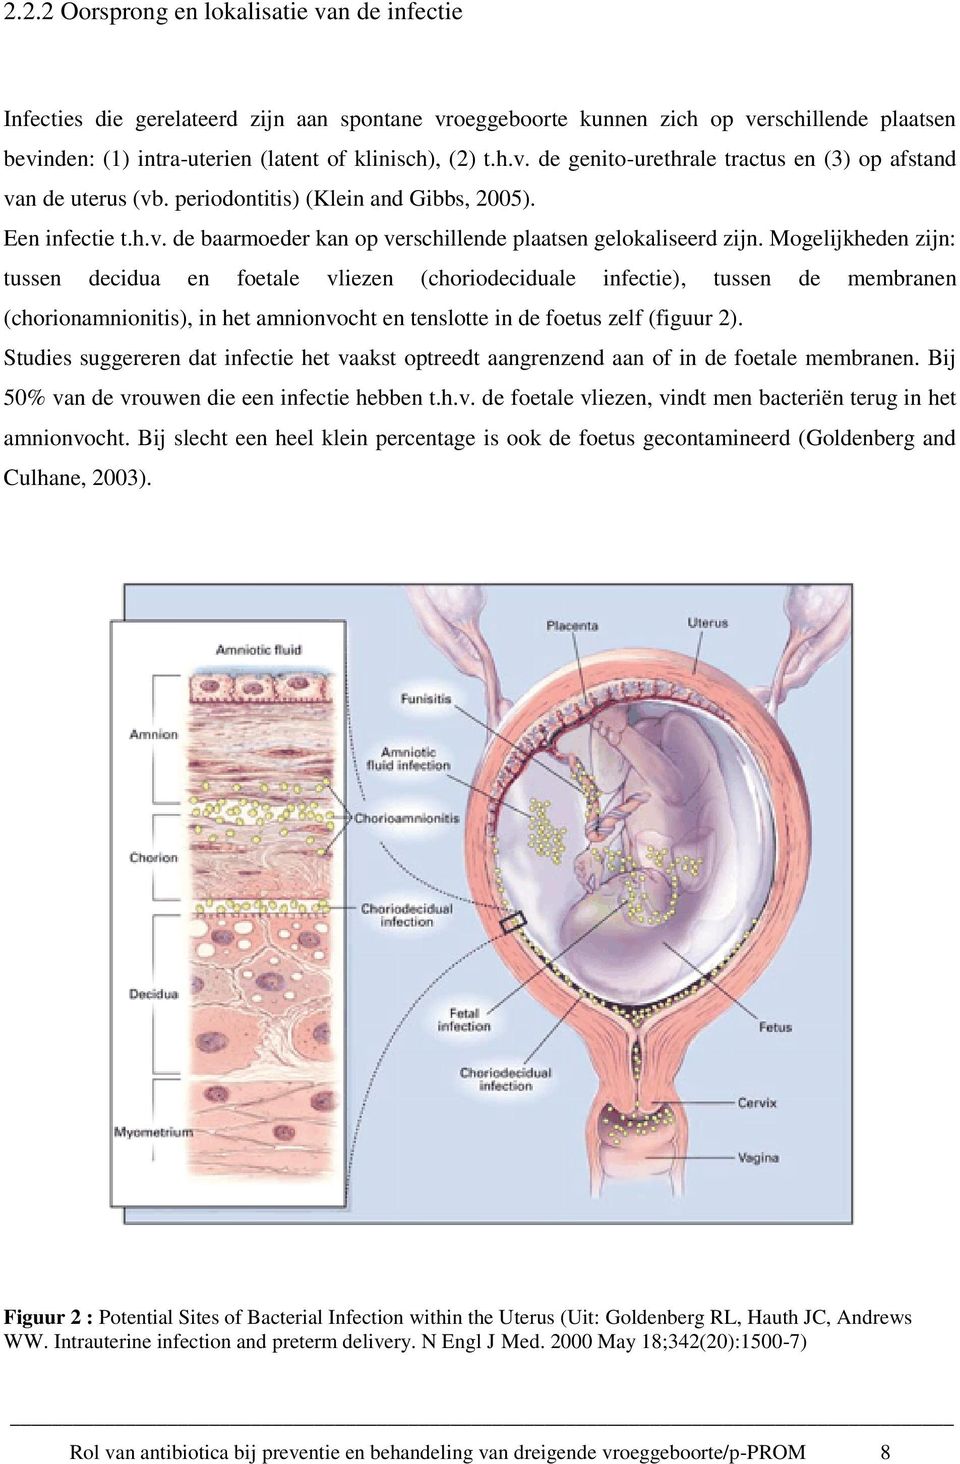 Mogelijkheden zijn: tussen decidua en foetale vliezen (choriodeciduale infectie), tussen de membranen (chorionamnionitis), in het amnionvocht en tenslotte in de foetus zelf (figuur 2).